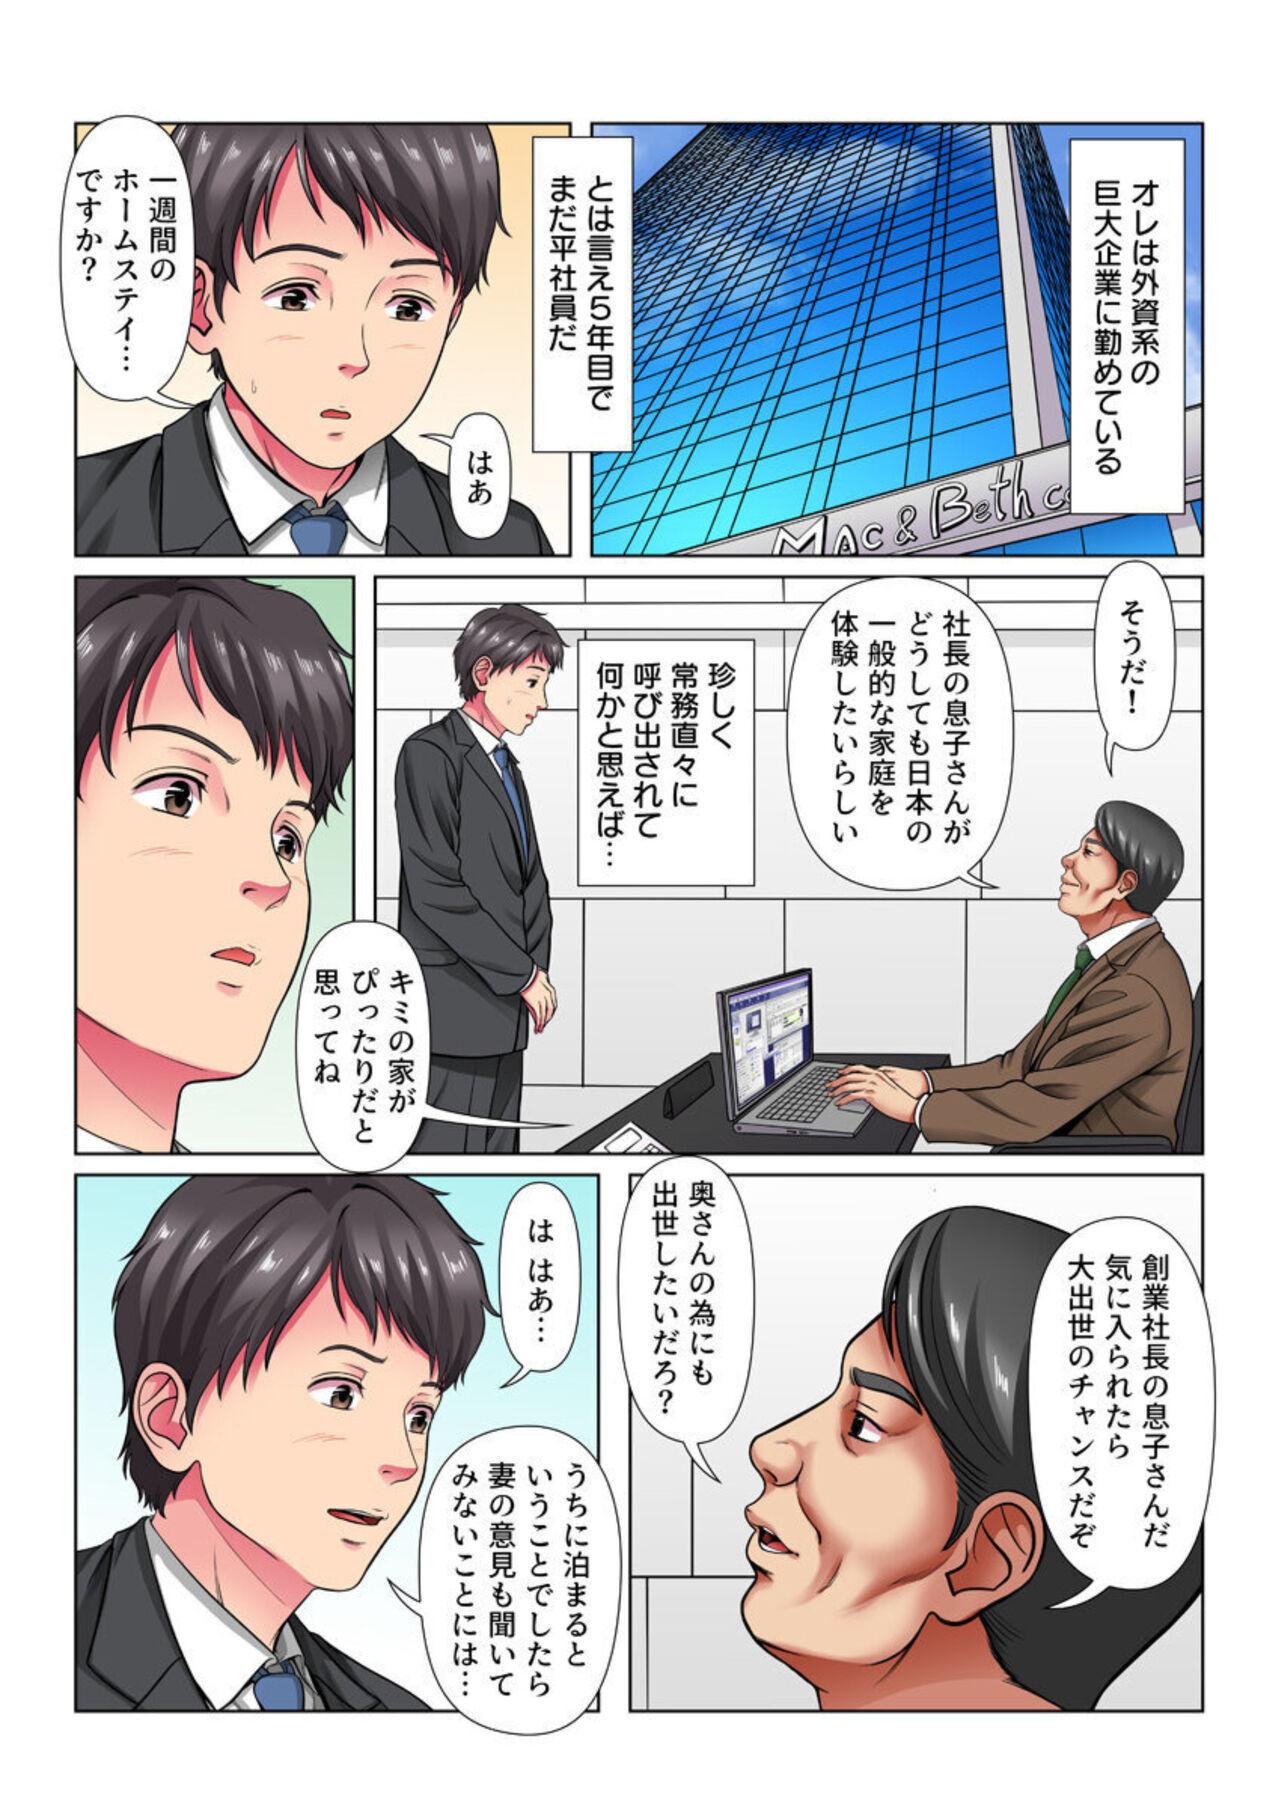 [Shimoda Nekomaru] Netorare Ibunka Kouryuu! Aisai, Gaishikei Kigyou CEO no Musuko ni Ochiru (Full Color) 1 3